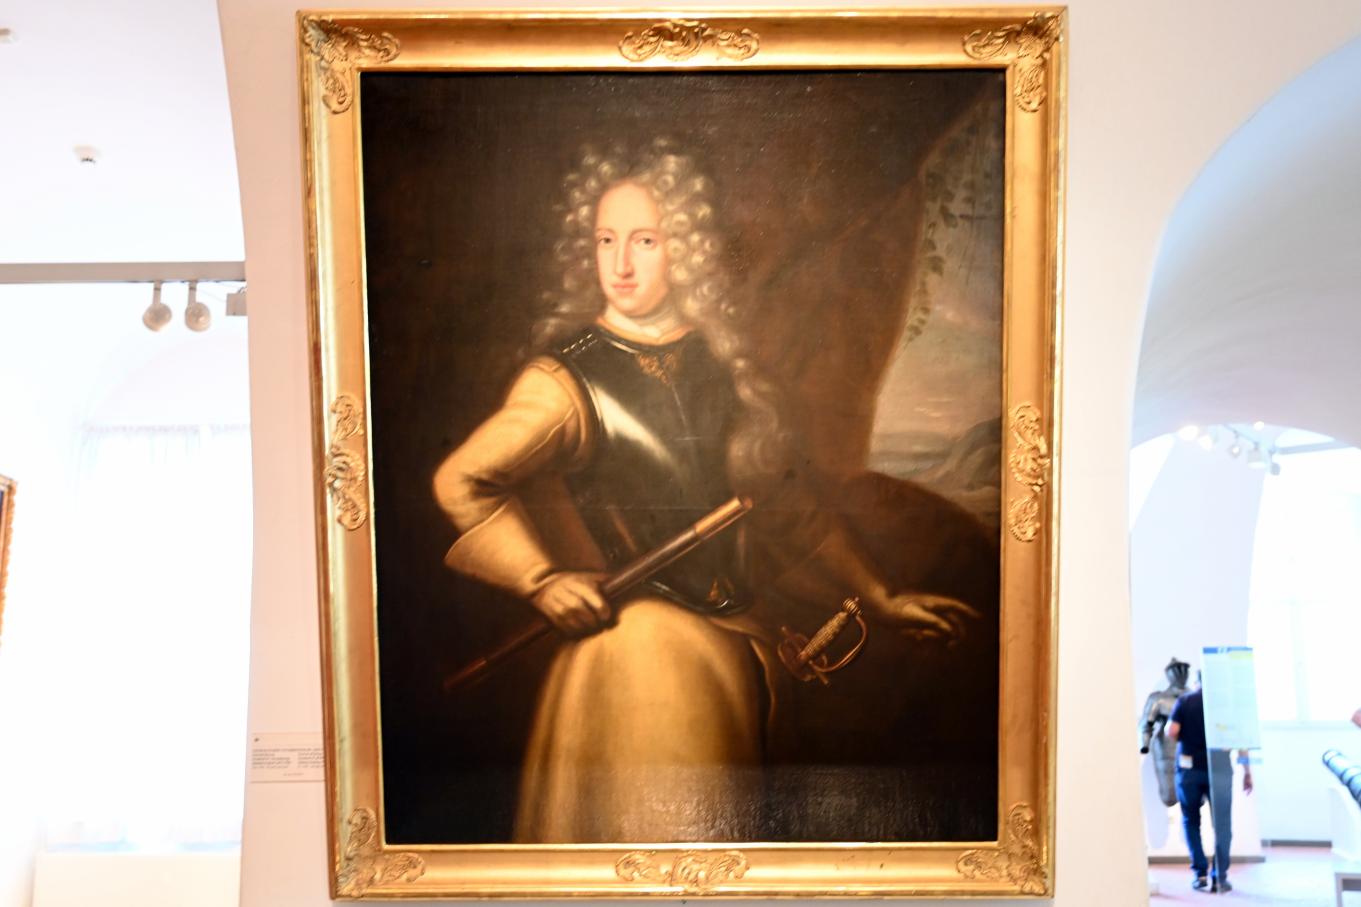 David Klöcker Ehrenstrahl (1660–1700), Portrait Herzog Friedrich IV von Schleswig-Holstein-Gottorf (1671-1702), Schleswig, Landesmuseum für Kunst und Kulturgeschichte, Saal 12, um 1700